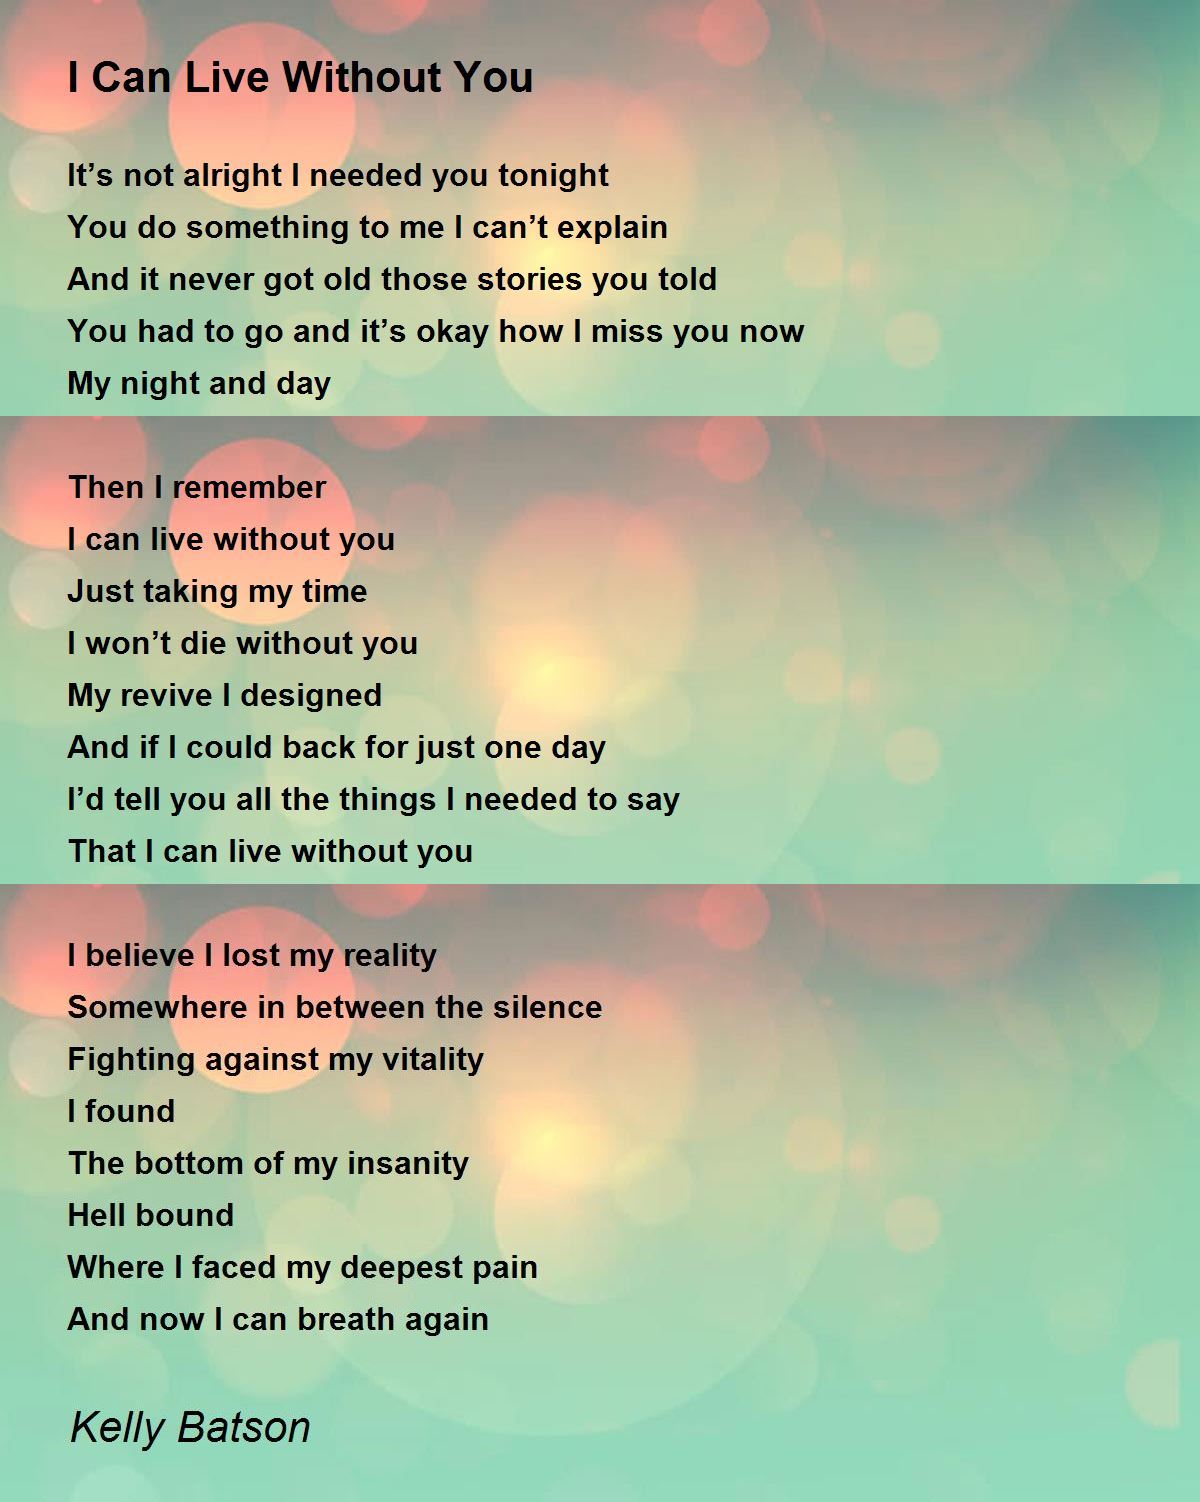 I Can Live Without You - I Can Live Without You Poem by Kelly Batson